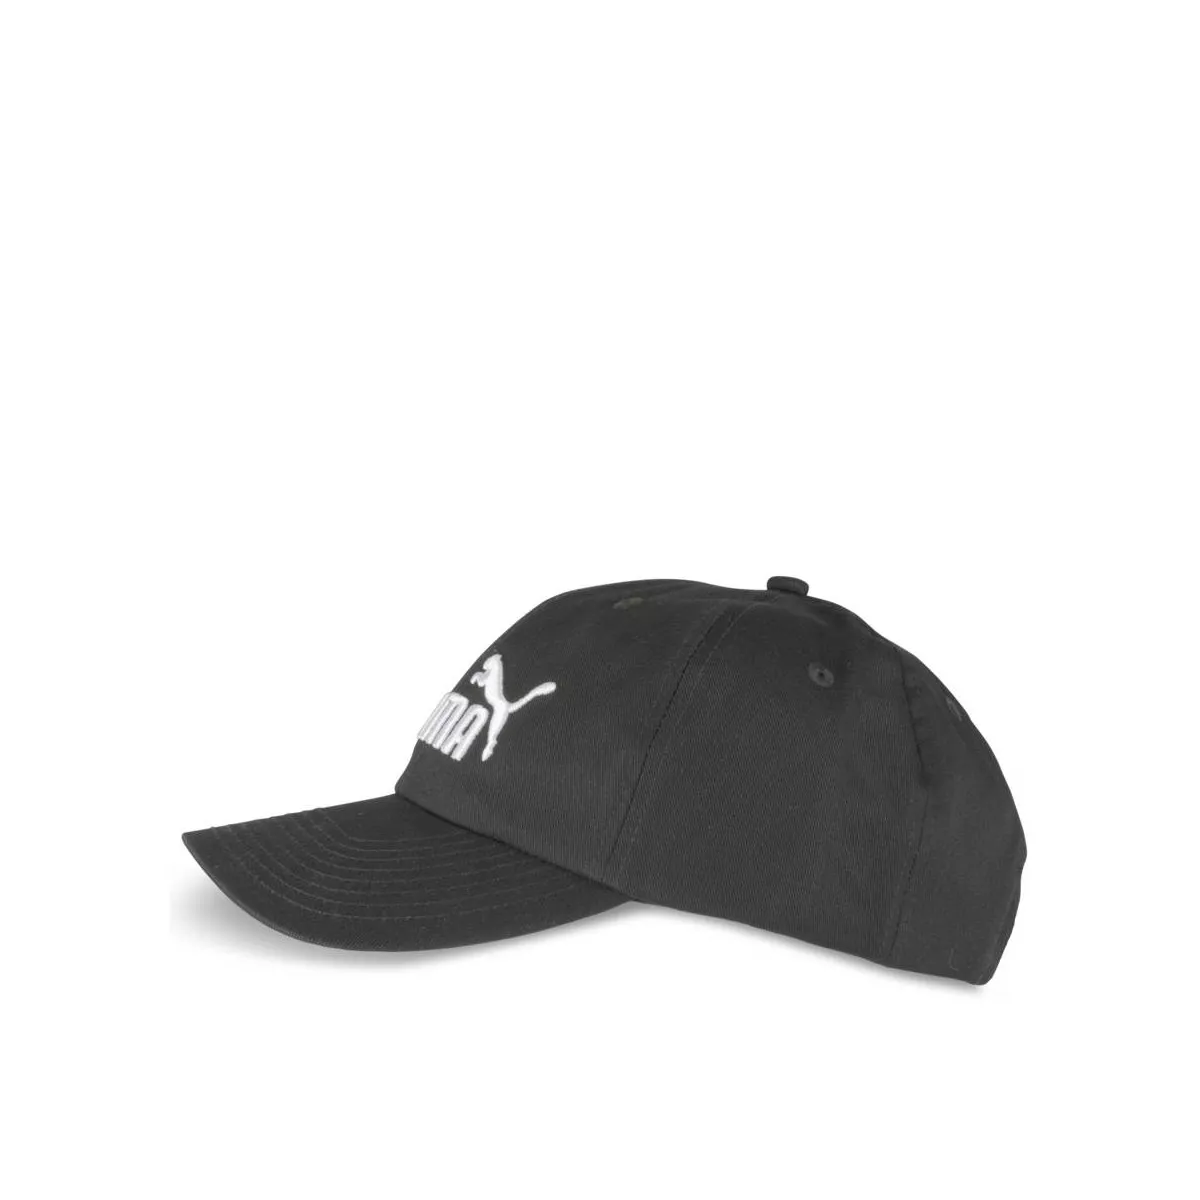 Lafuma Derry Warm Cap noir, casquette chaude adulte